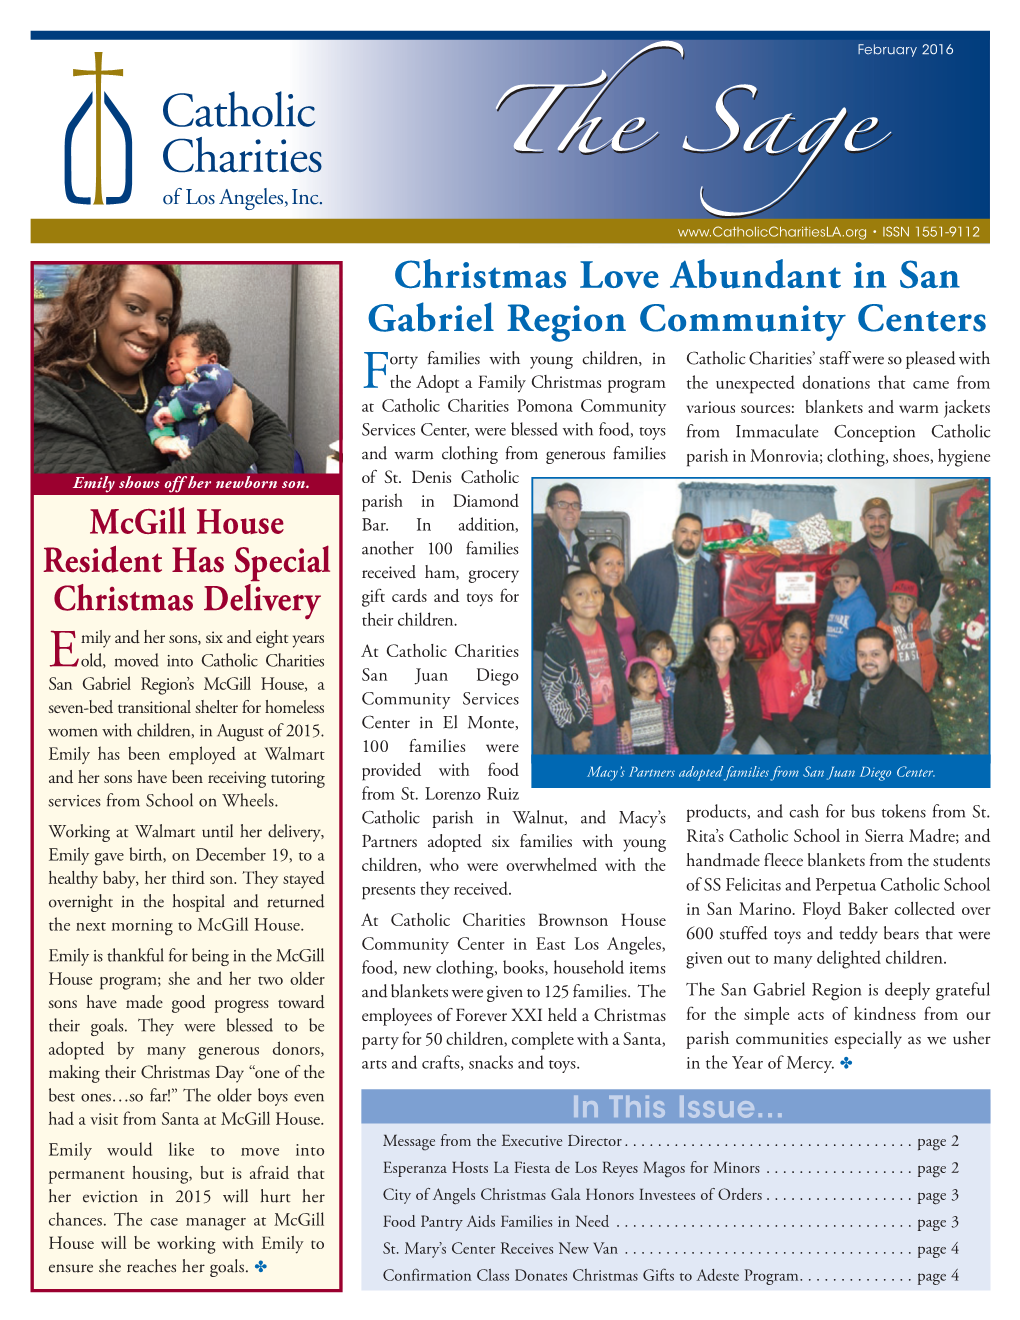 Christmas Love Abundant in San Gabriel Region Community Centers